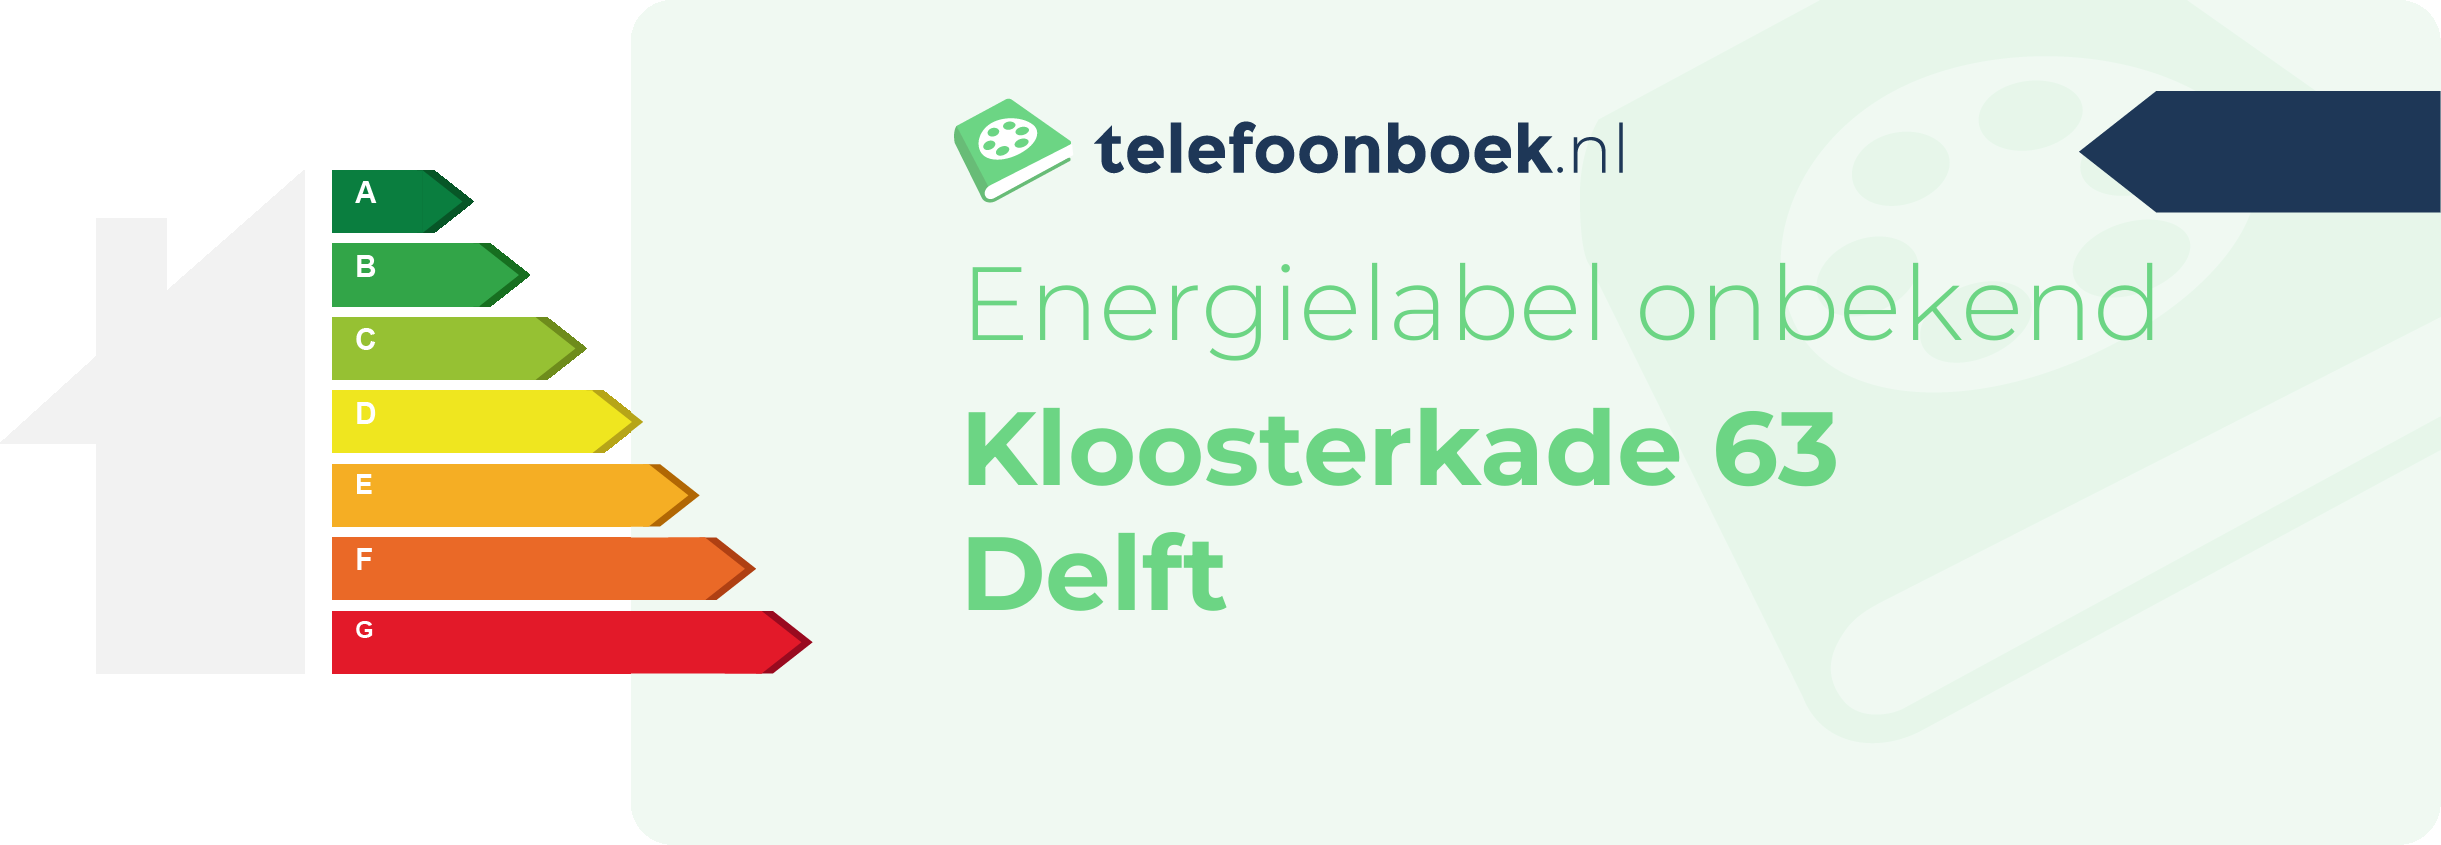 Energielabel Kloosterkade 63 Delft